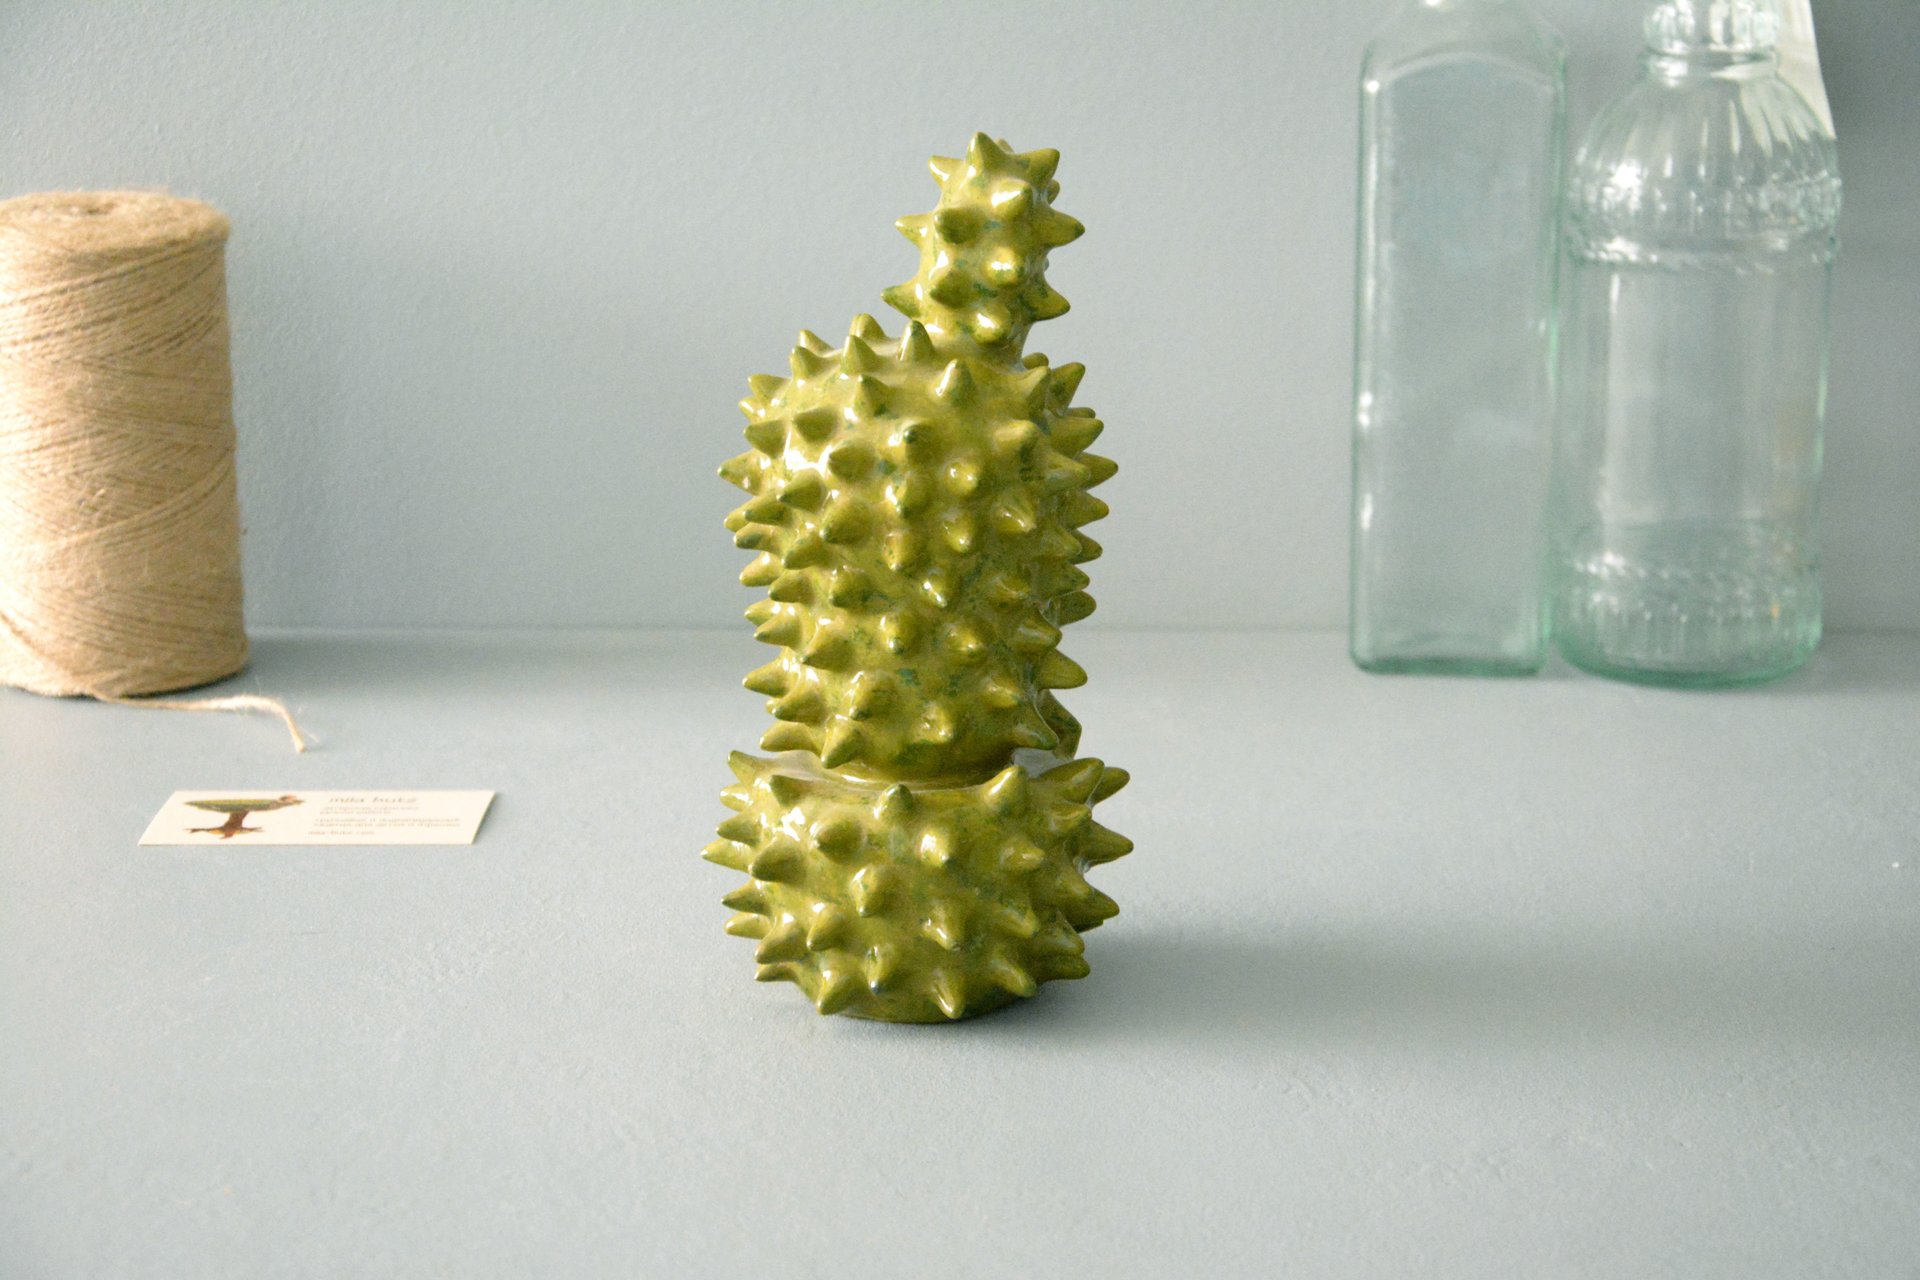 Decorative cactus Echinopsis - Cactus ceramic, height - 21 cm, photo 1 of 5.